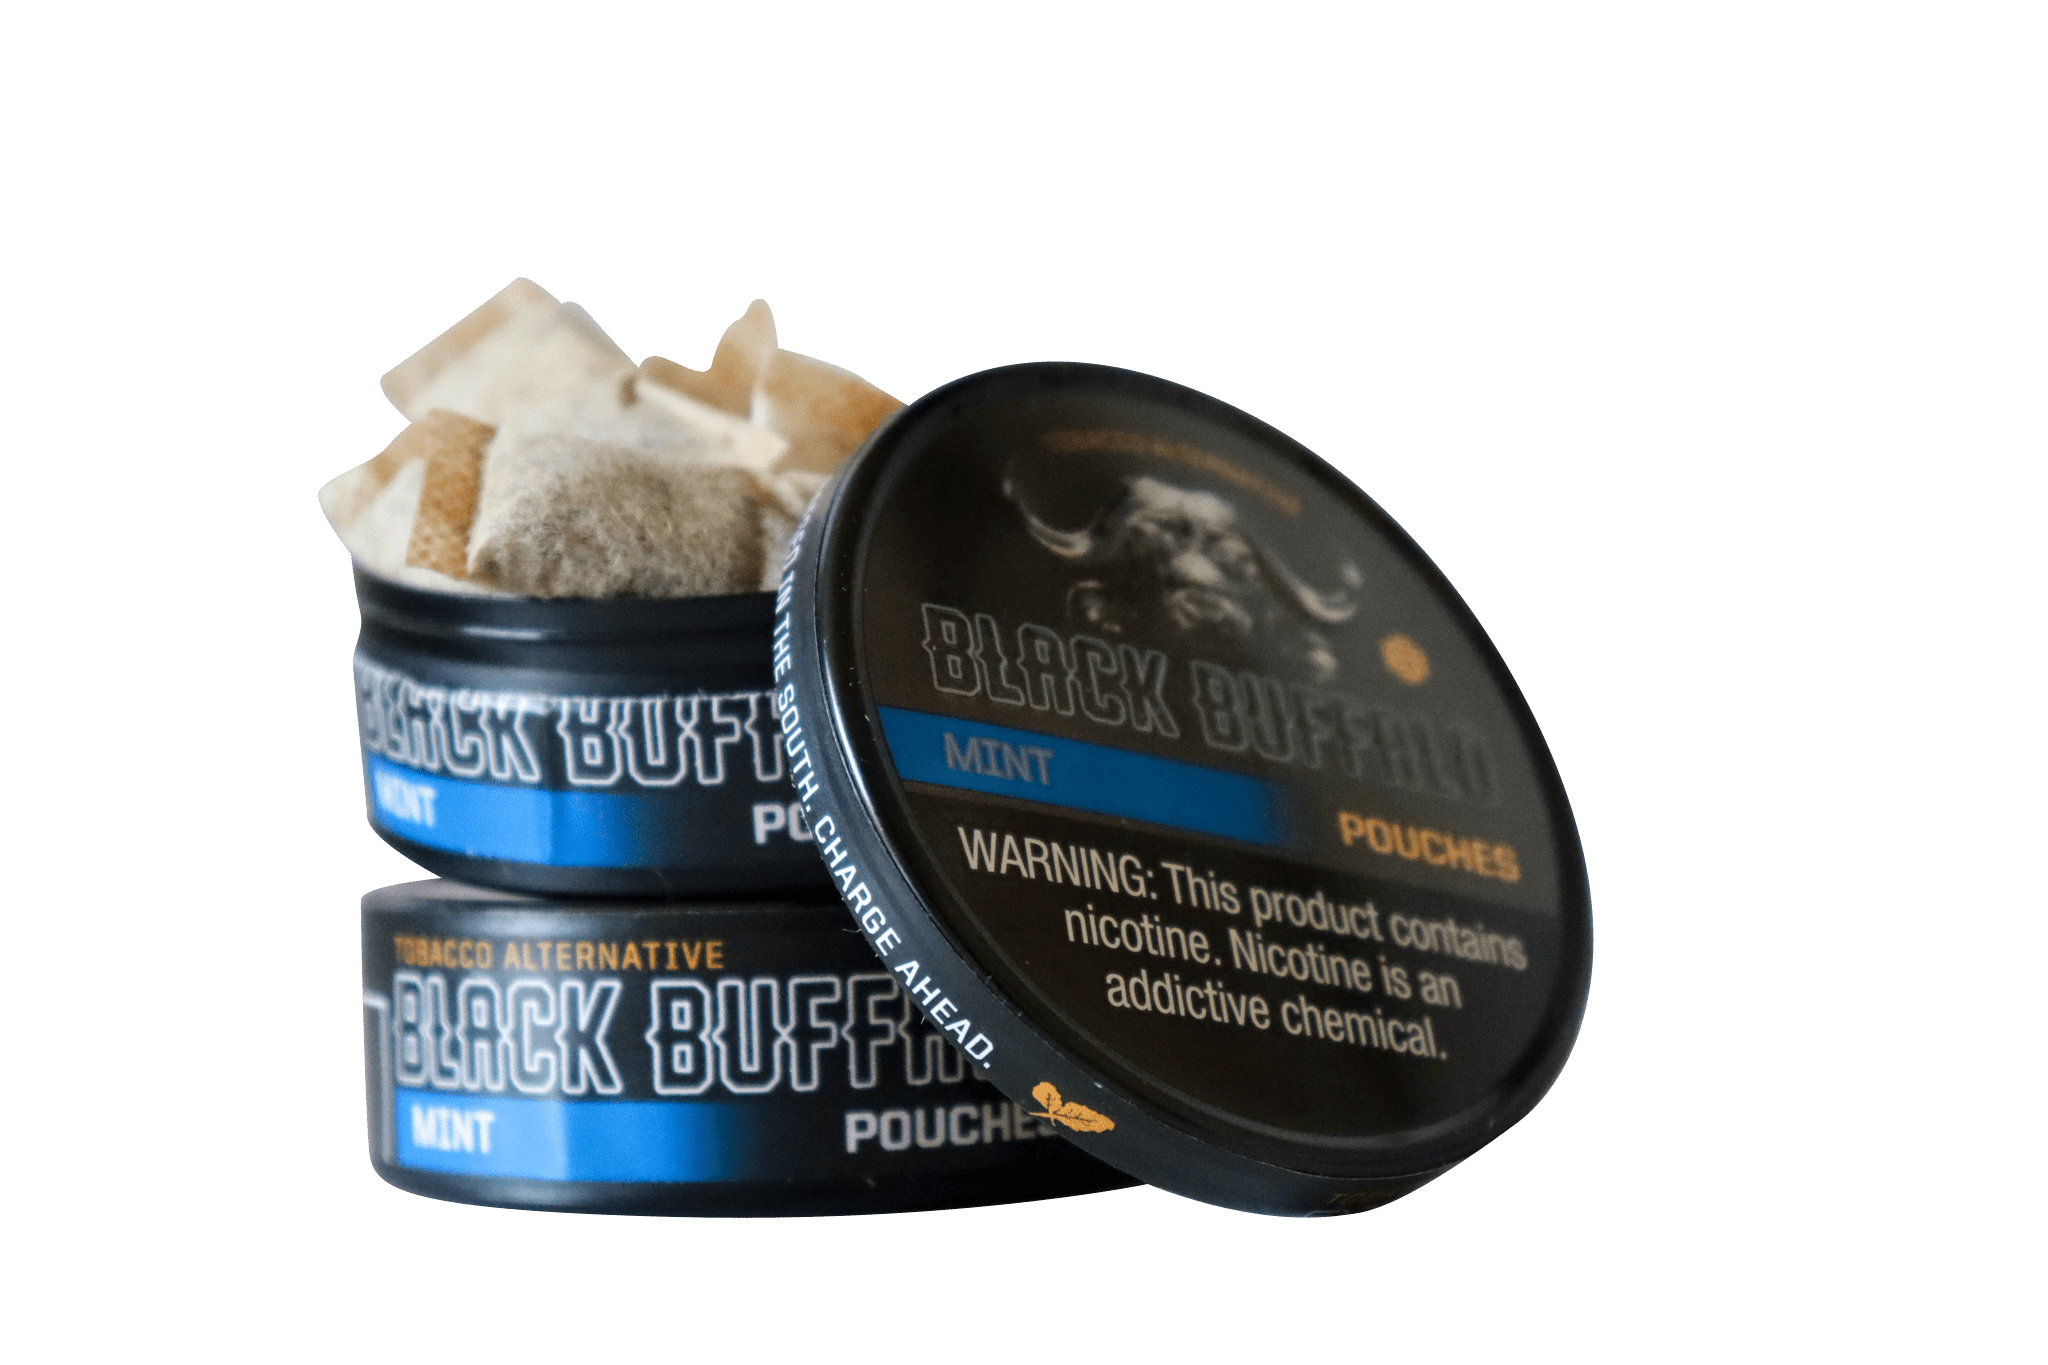 Black Buffalo Pouches / Mint / 2-Pack Black Buffalo Nicotine